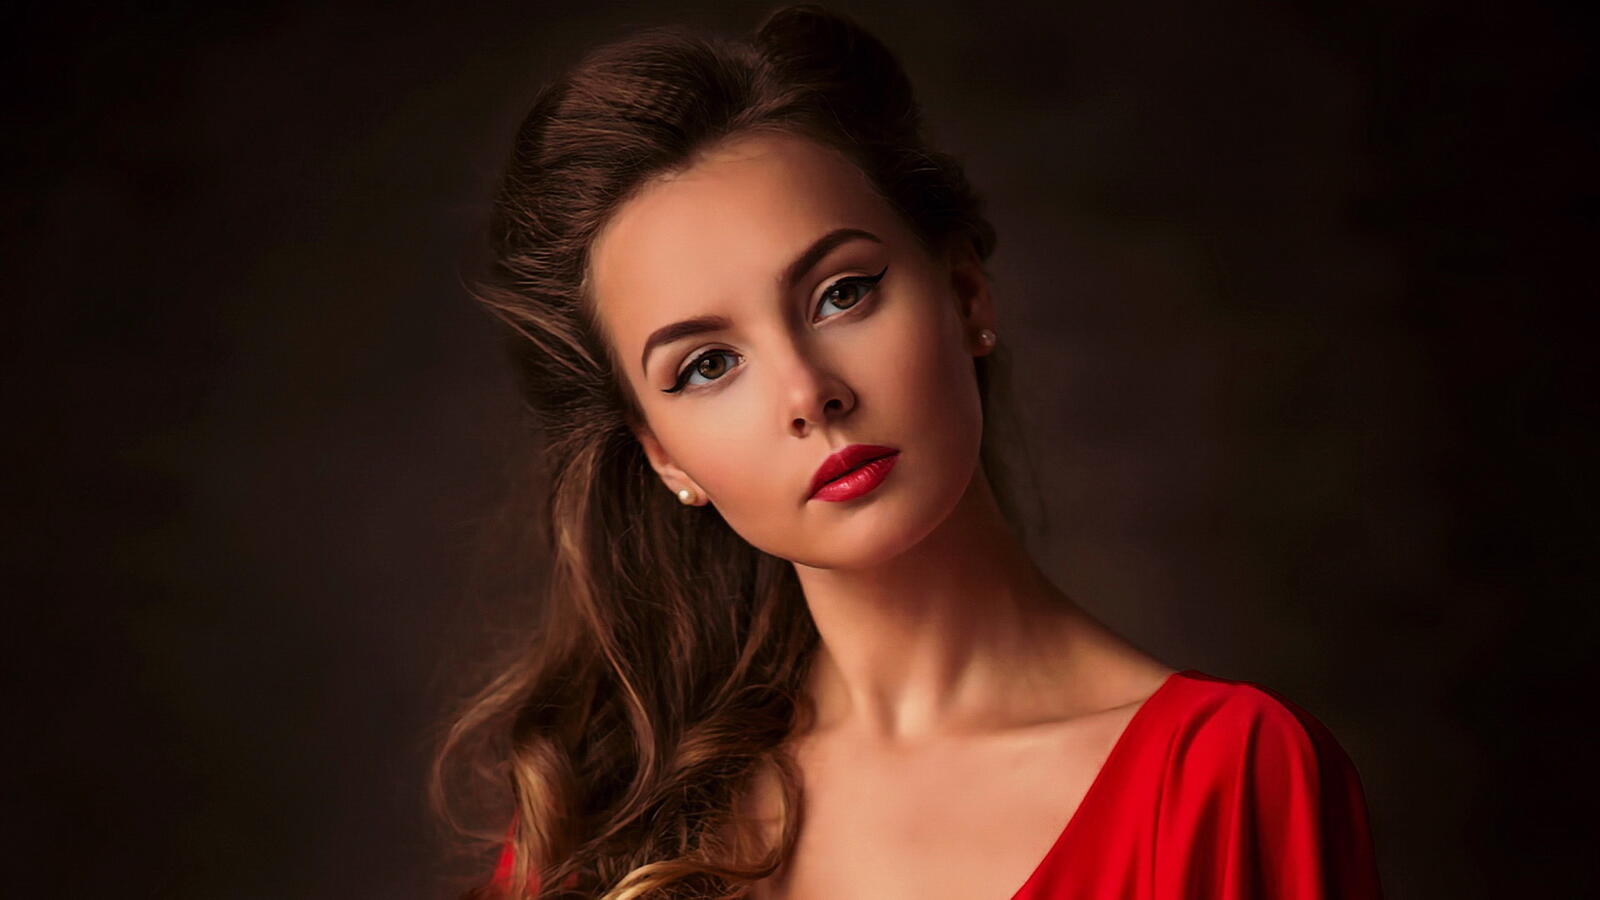 Бесплатное фото Портрет девушка в красном